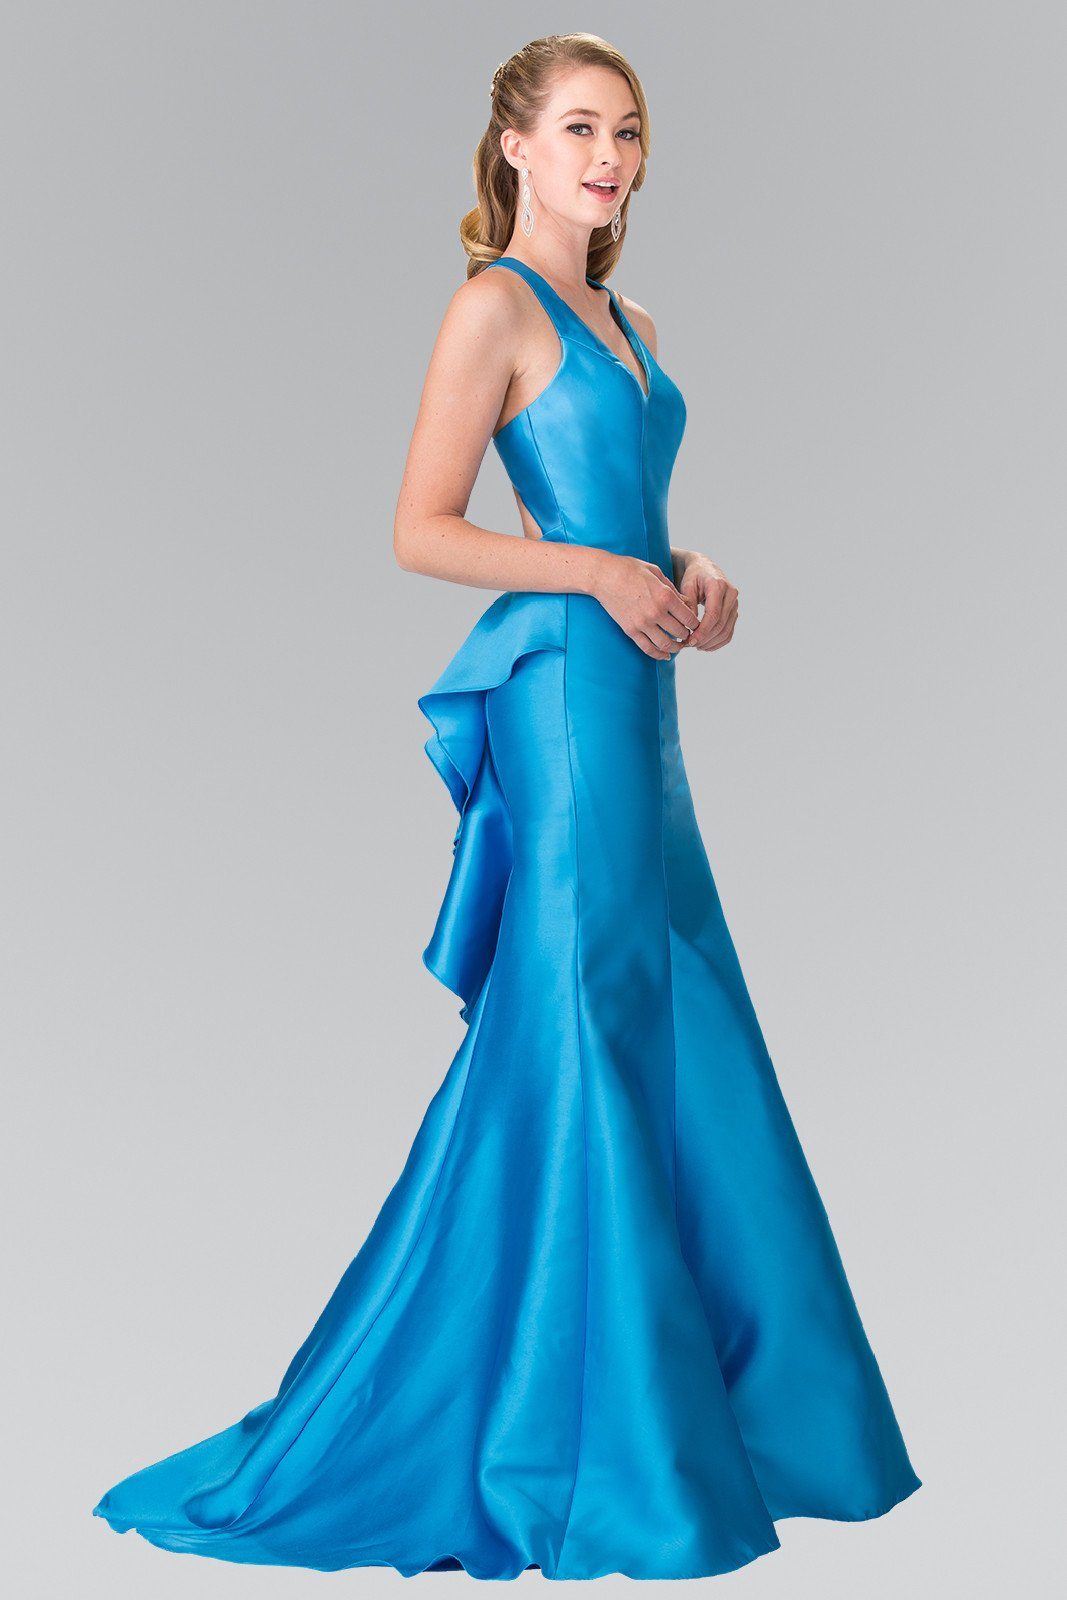 Ruffled Mermaid Gown with Open Back by Elizabeth K GL2224 – ABC Fashion